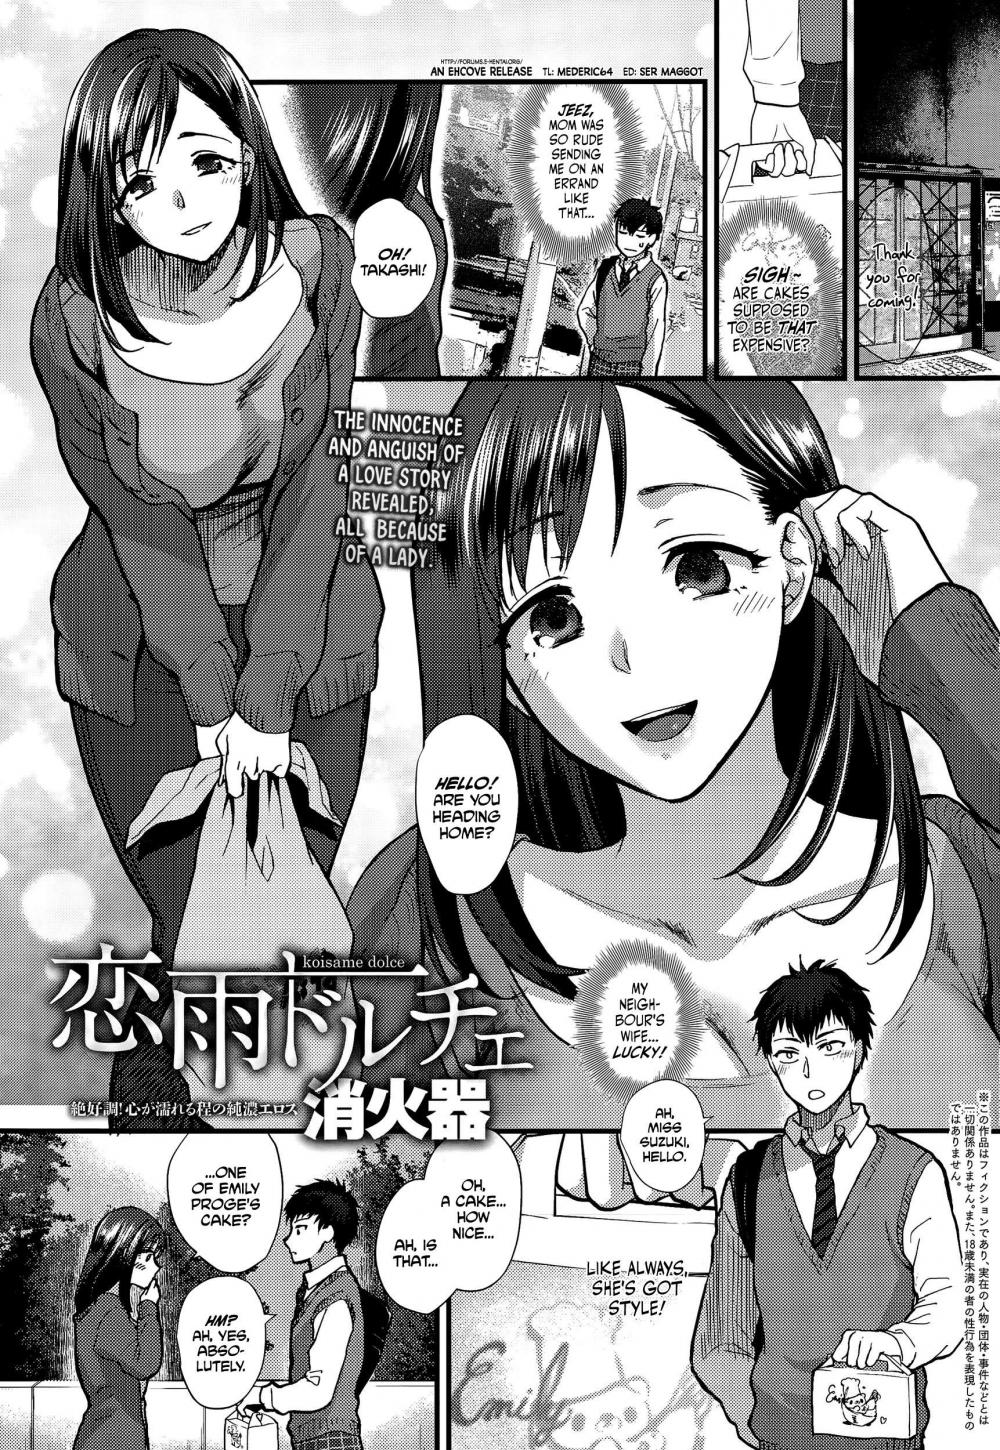 Hentai Manga Comic-Koisame Dolce-Read-1